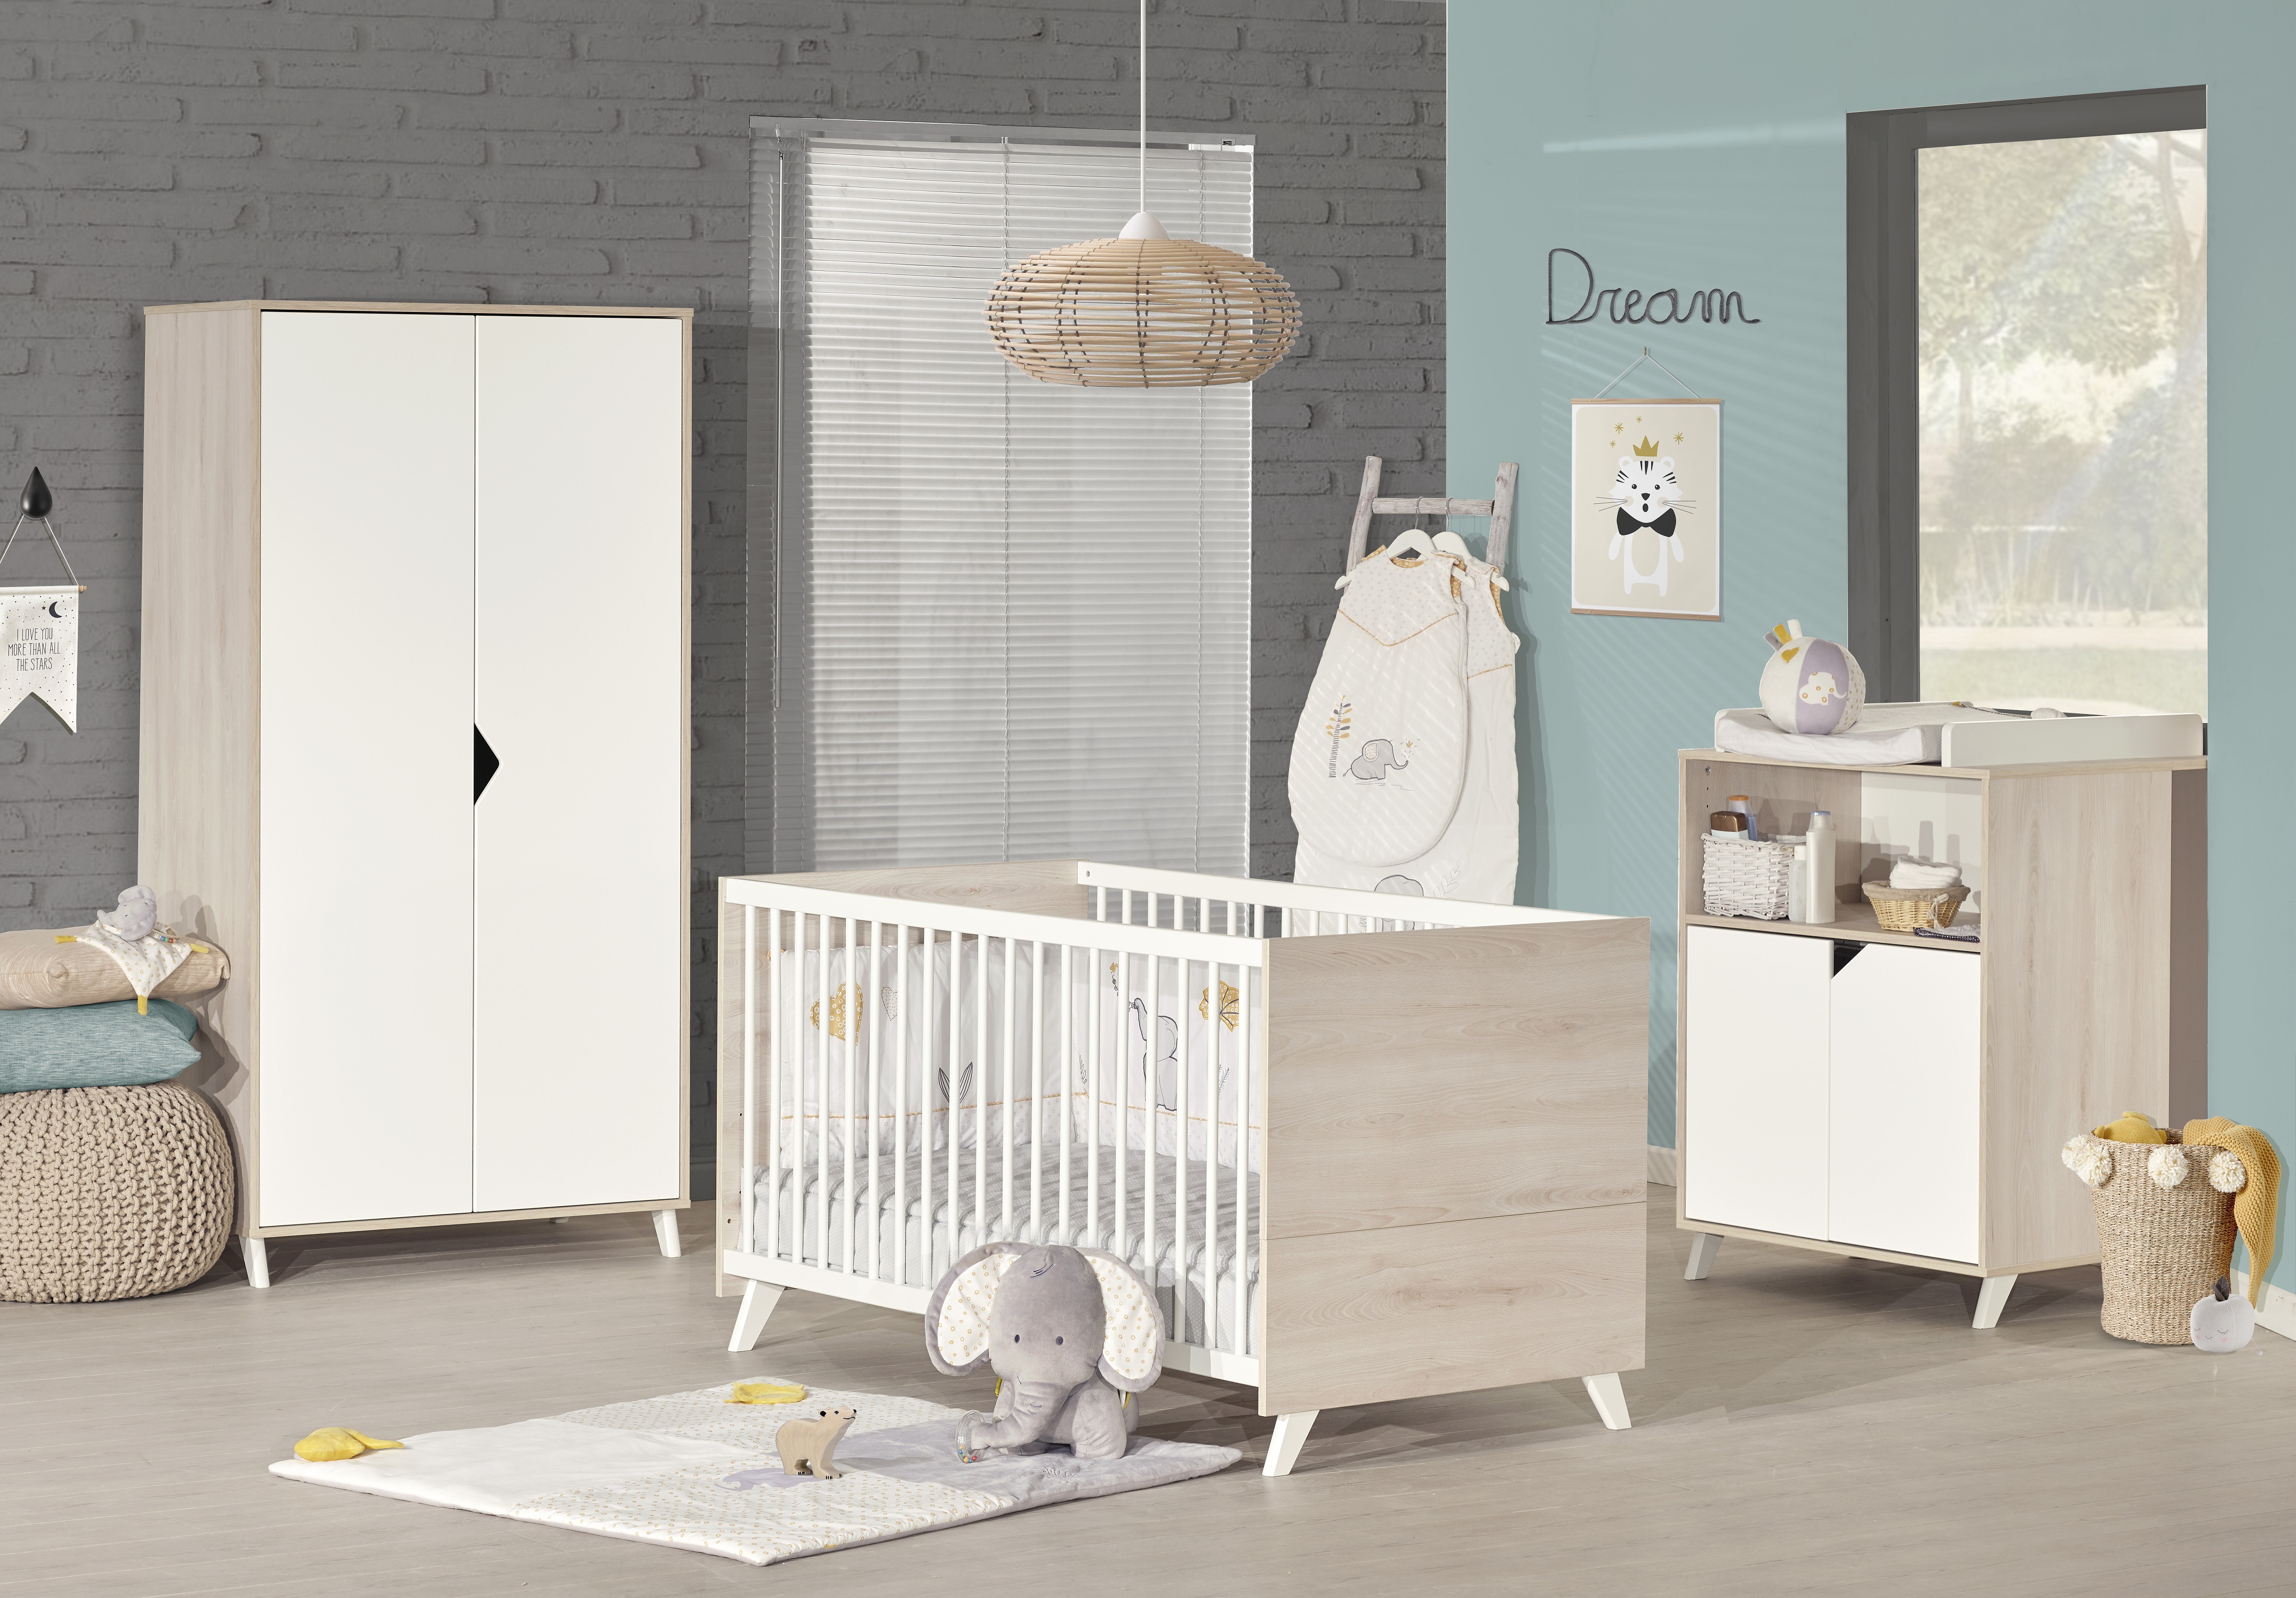 Mobilier de chambre de bébé essentiel nature blanc et bois